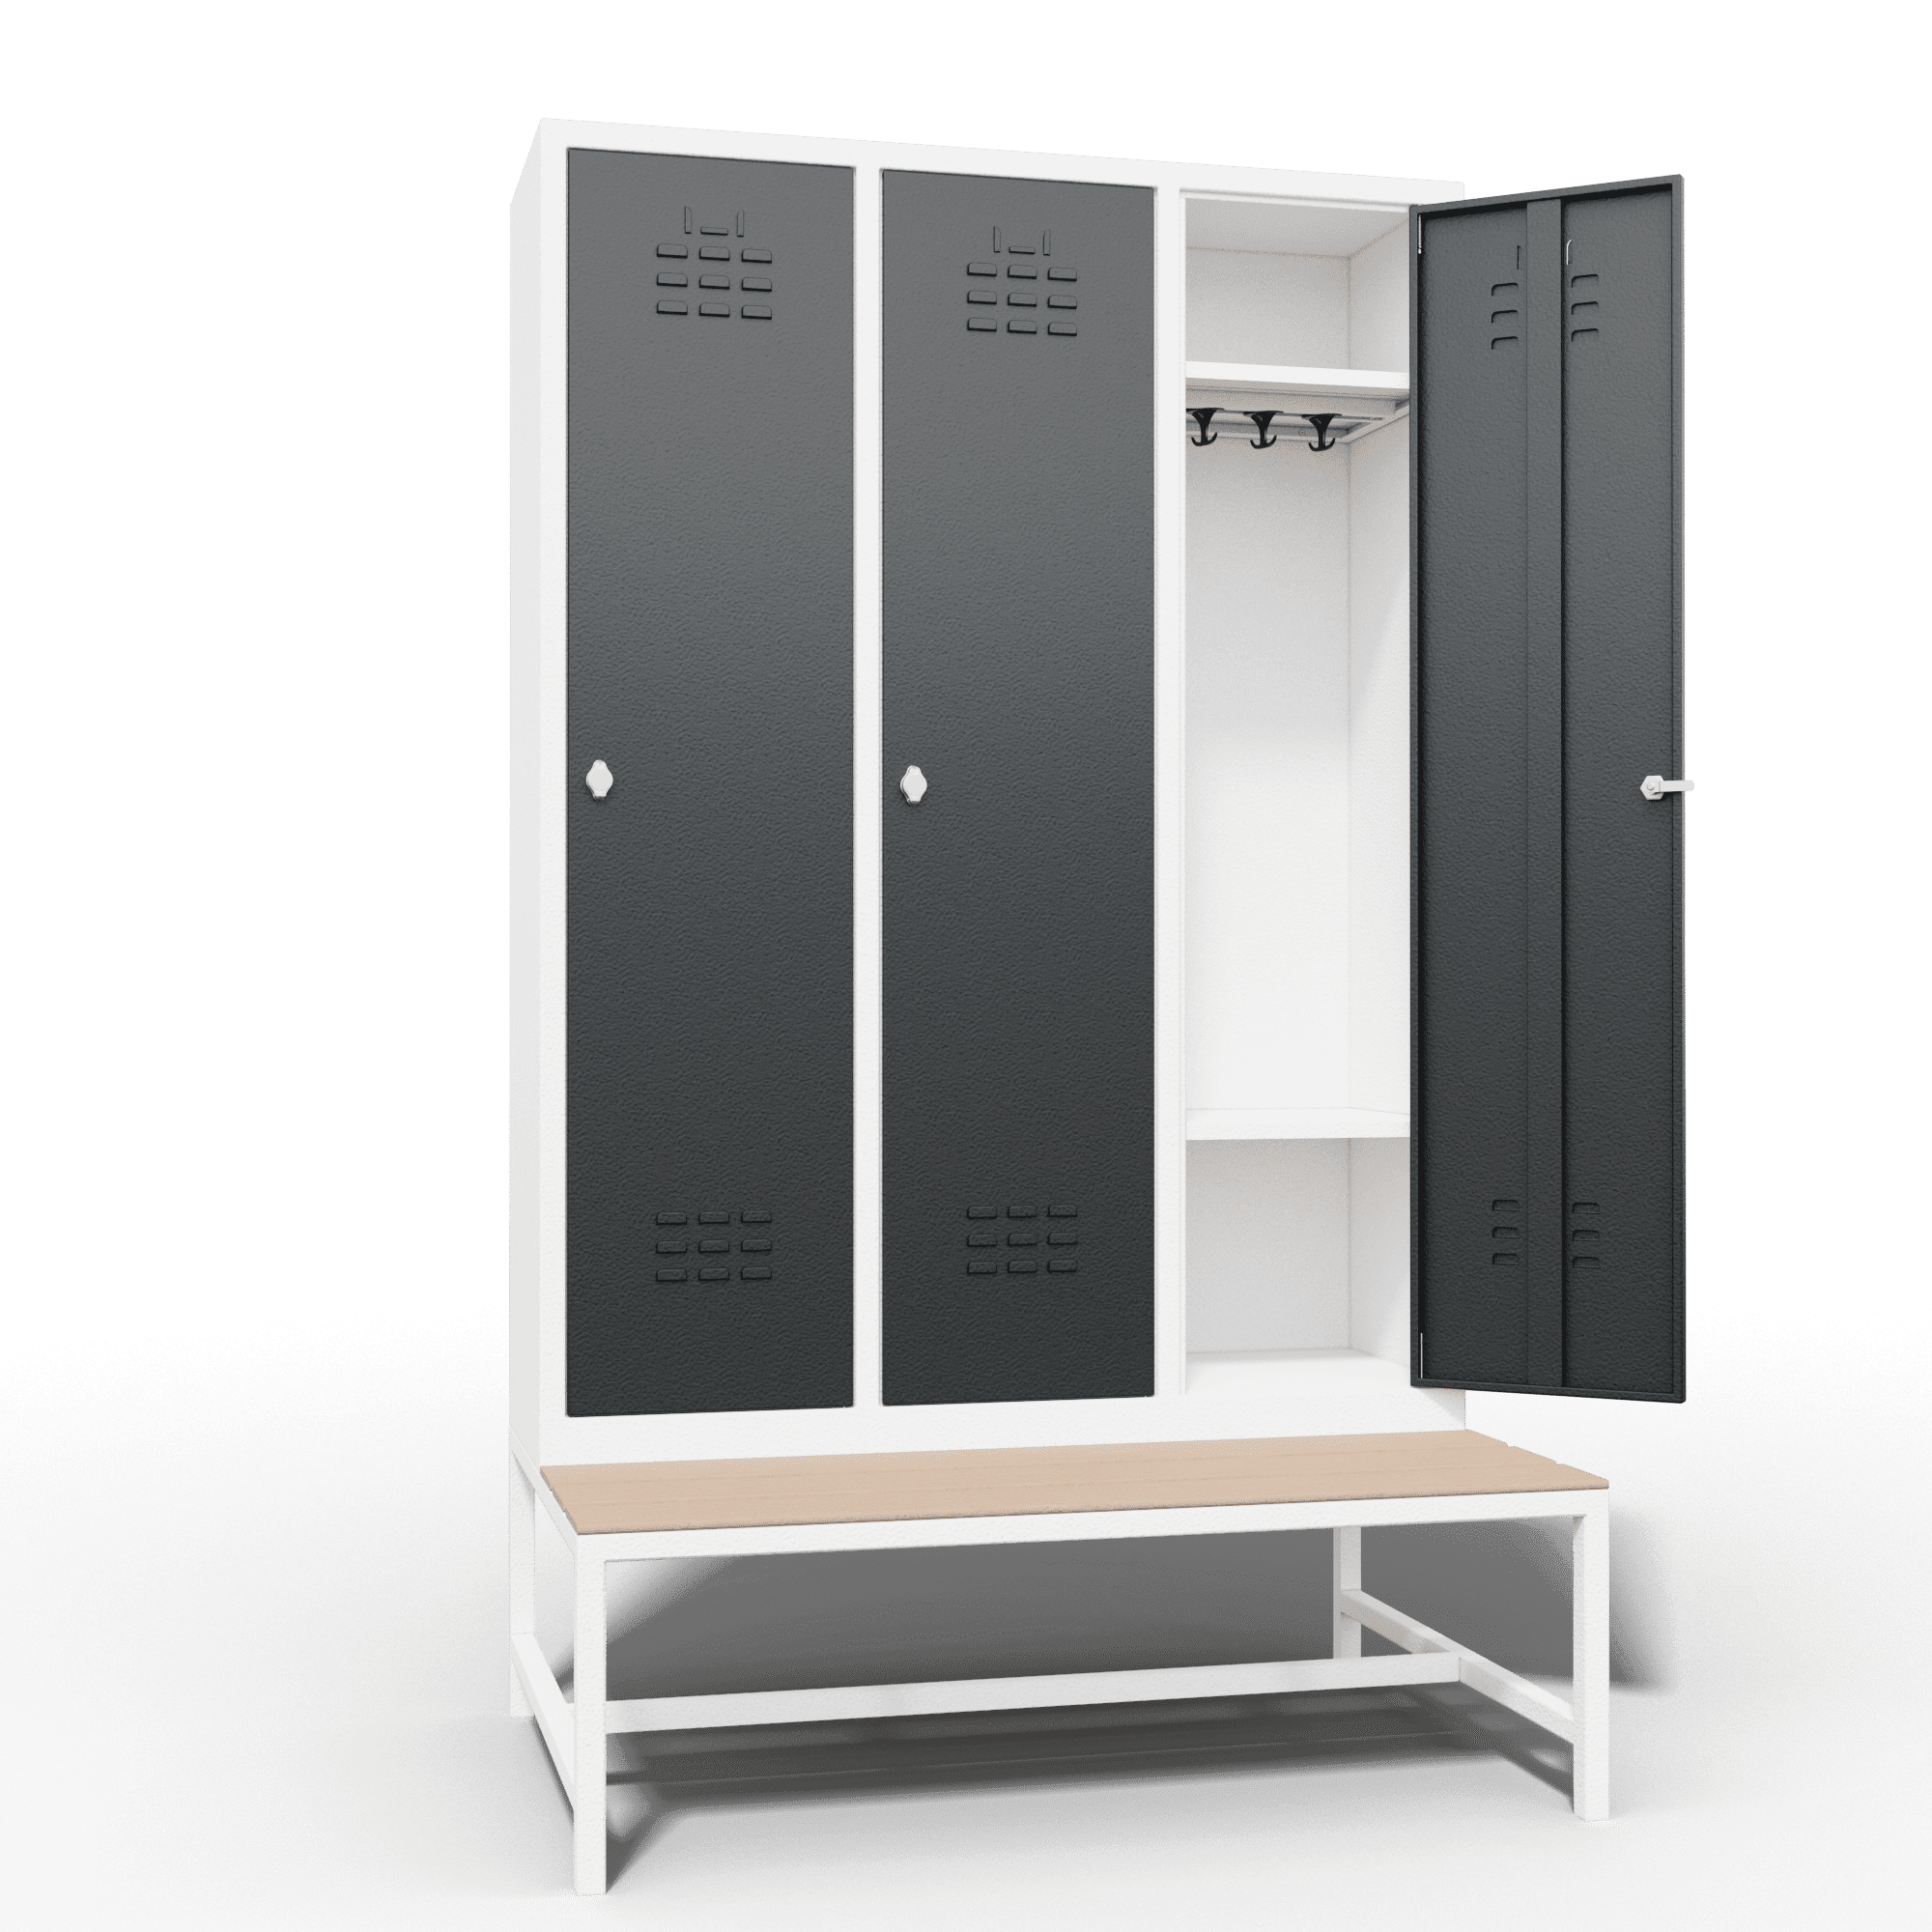 locker single tier 3 door with seat bench_2